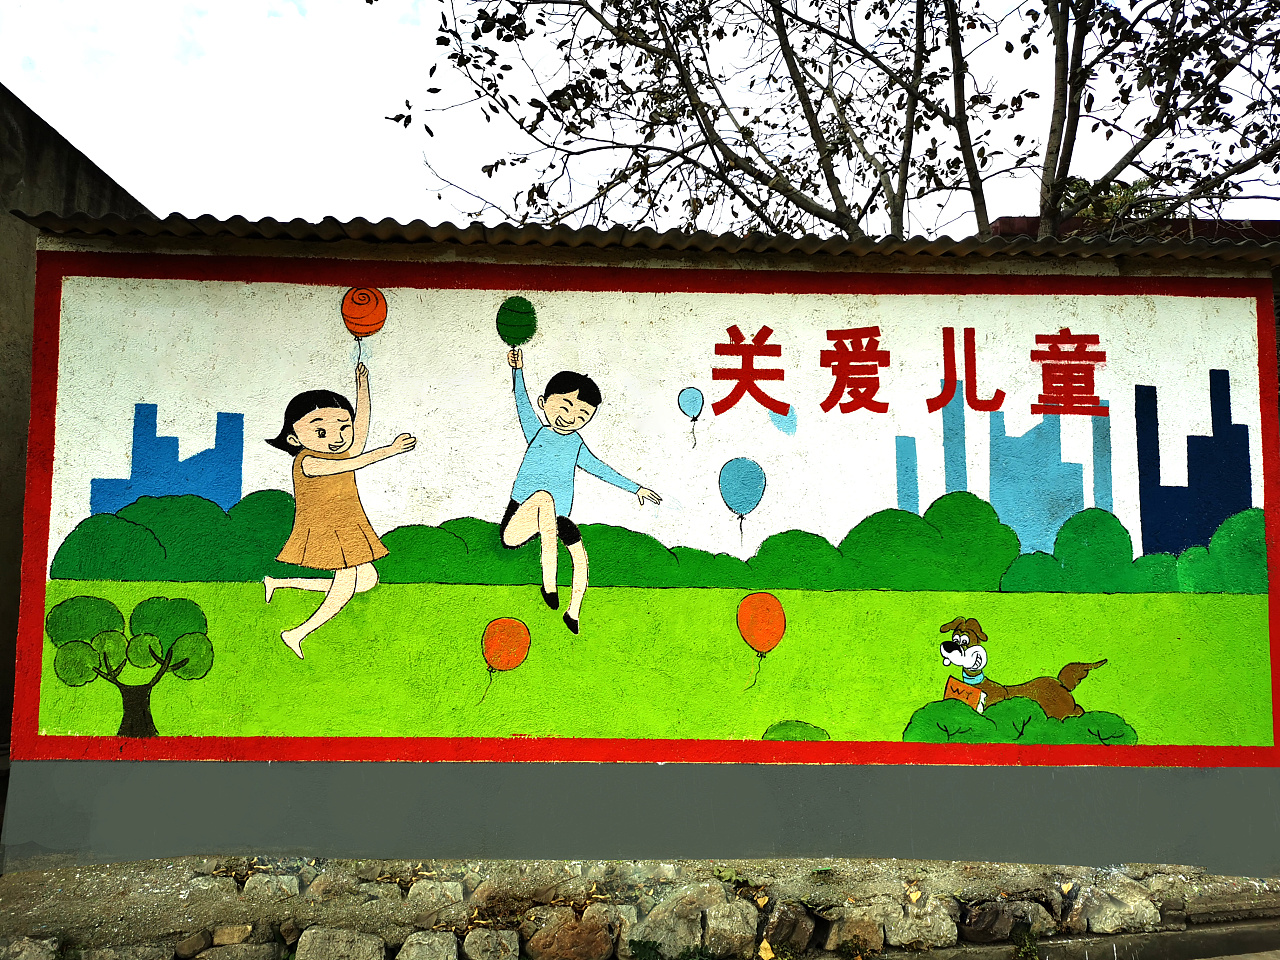 社区文化保护环境环保墙绘消防安全和谐乡村孝老爱亲